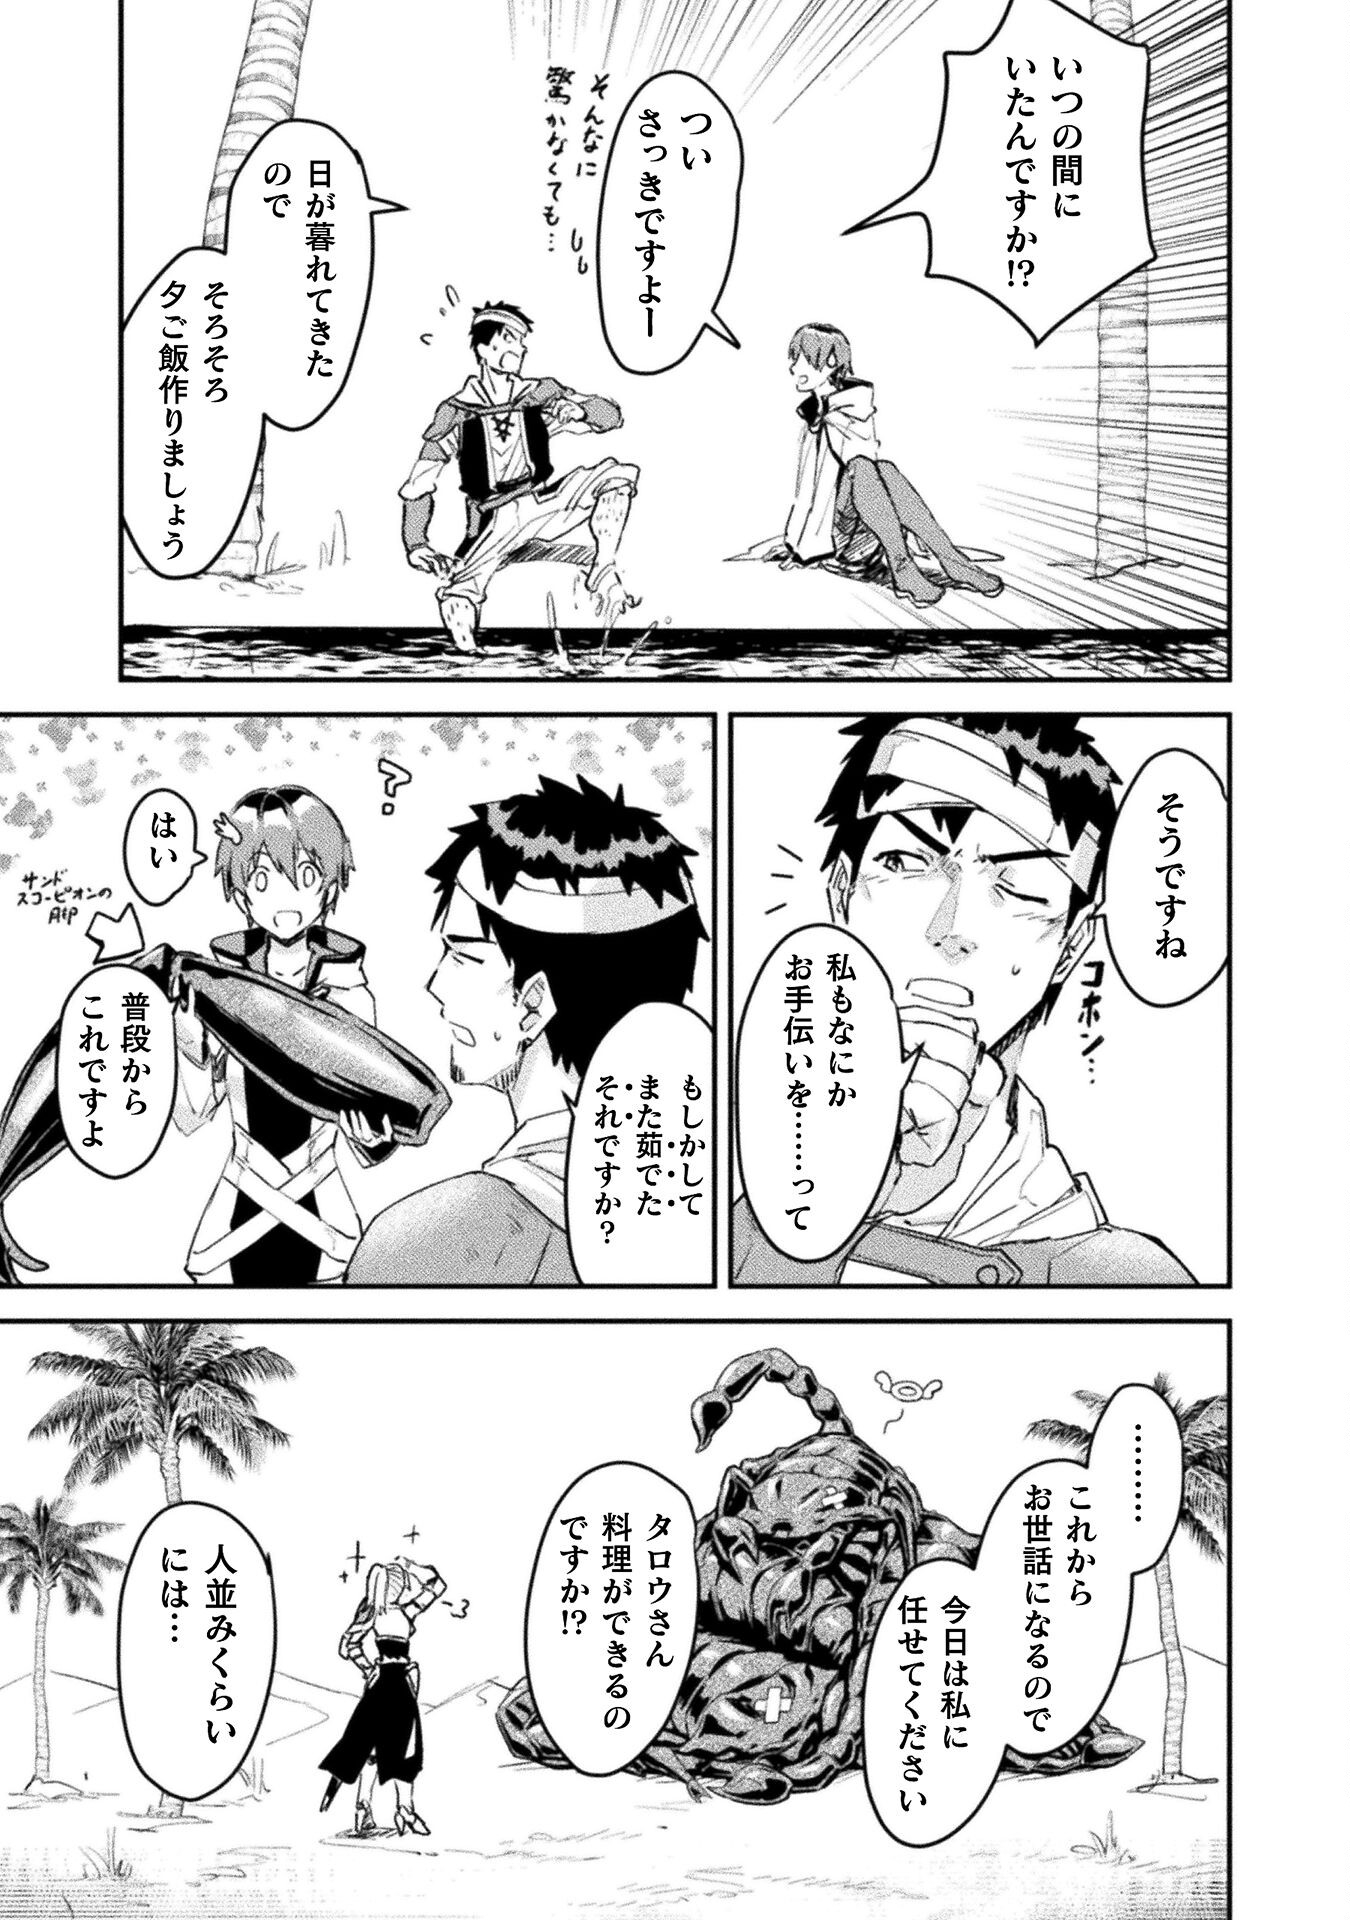 Sabaku Darake no Sekai de, Ossan ga Denshi Money de Musou Suru - Chapter 7 - Page 3